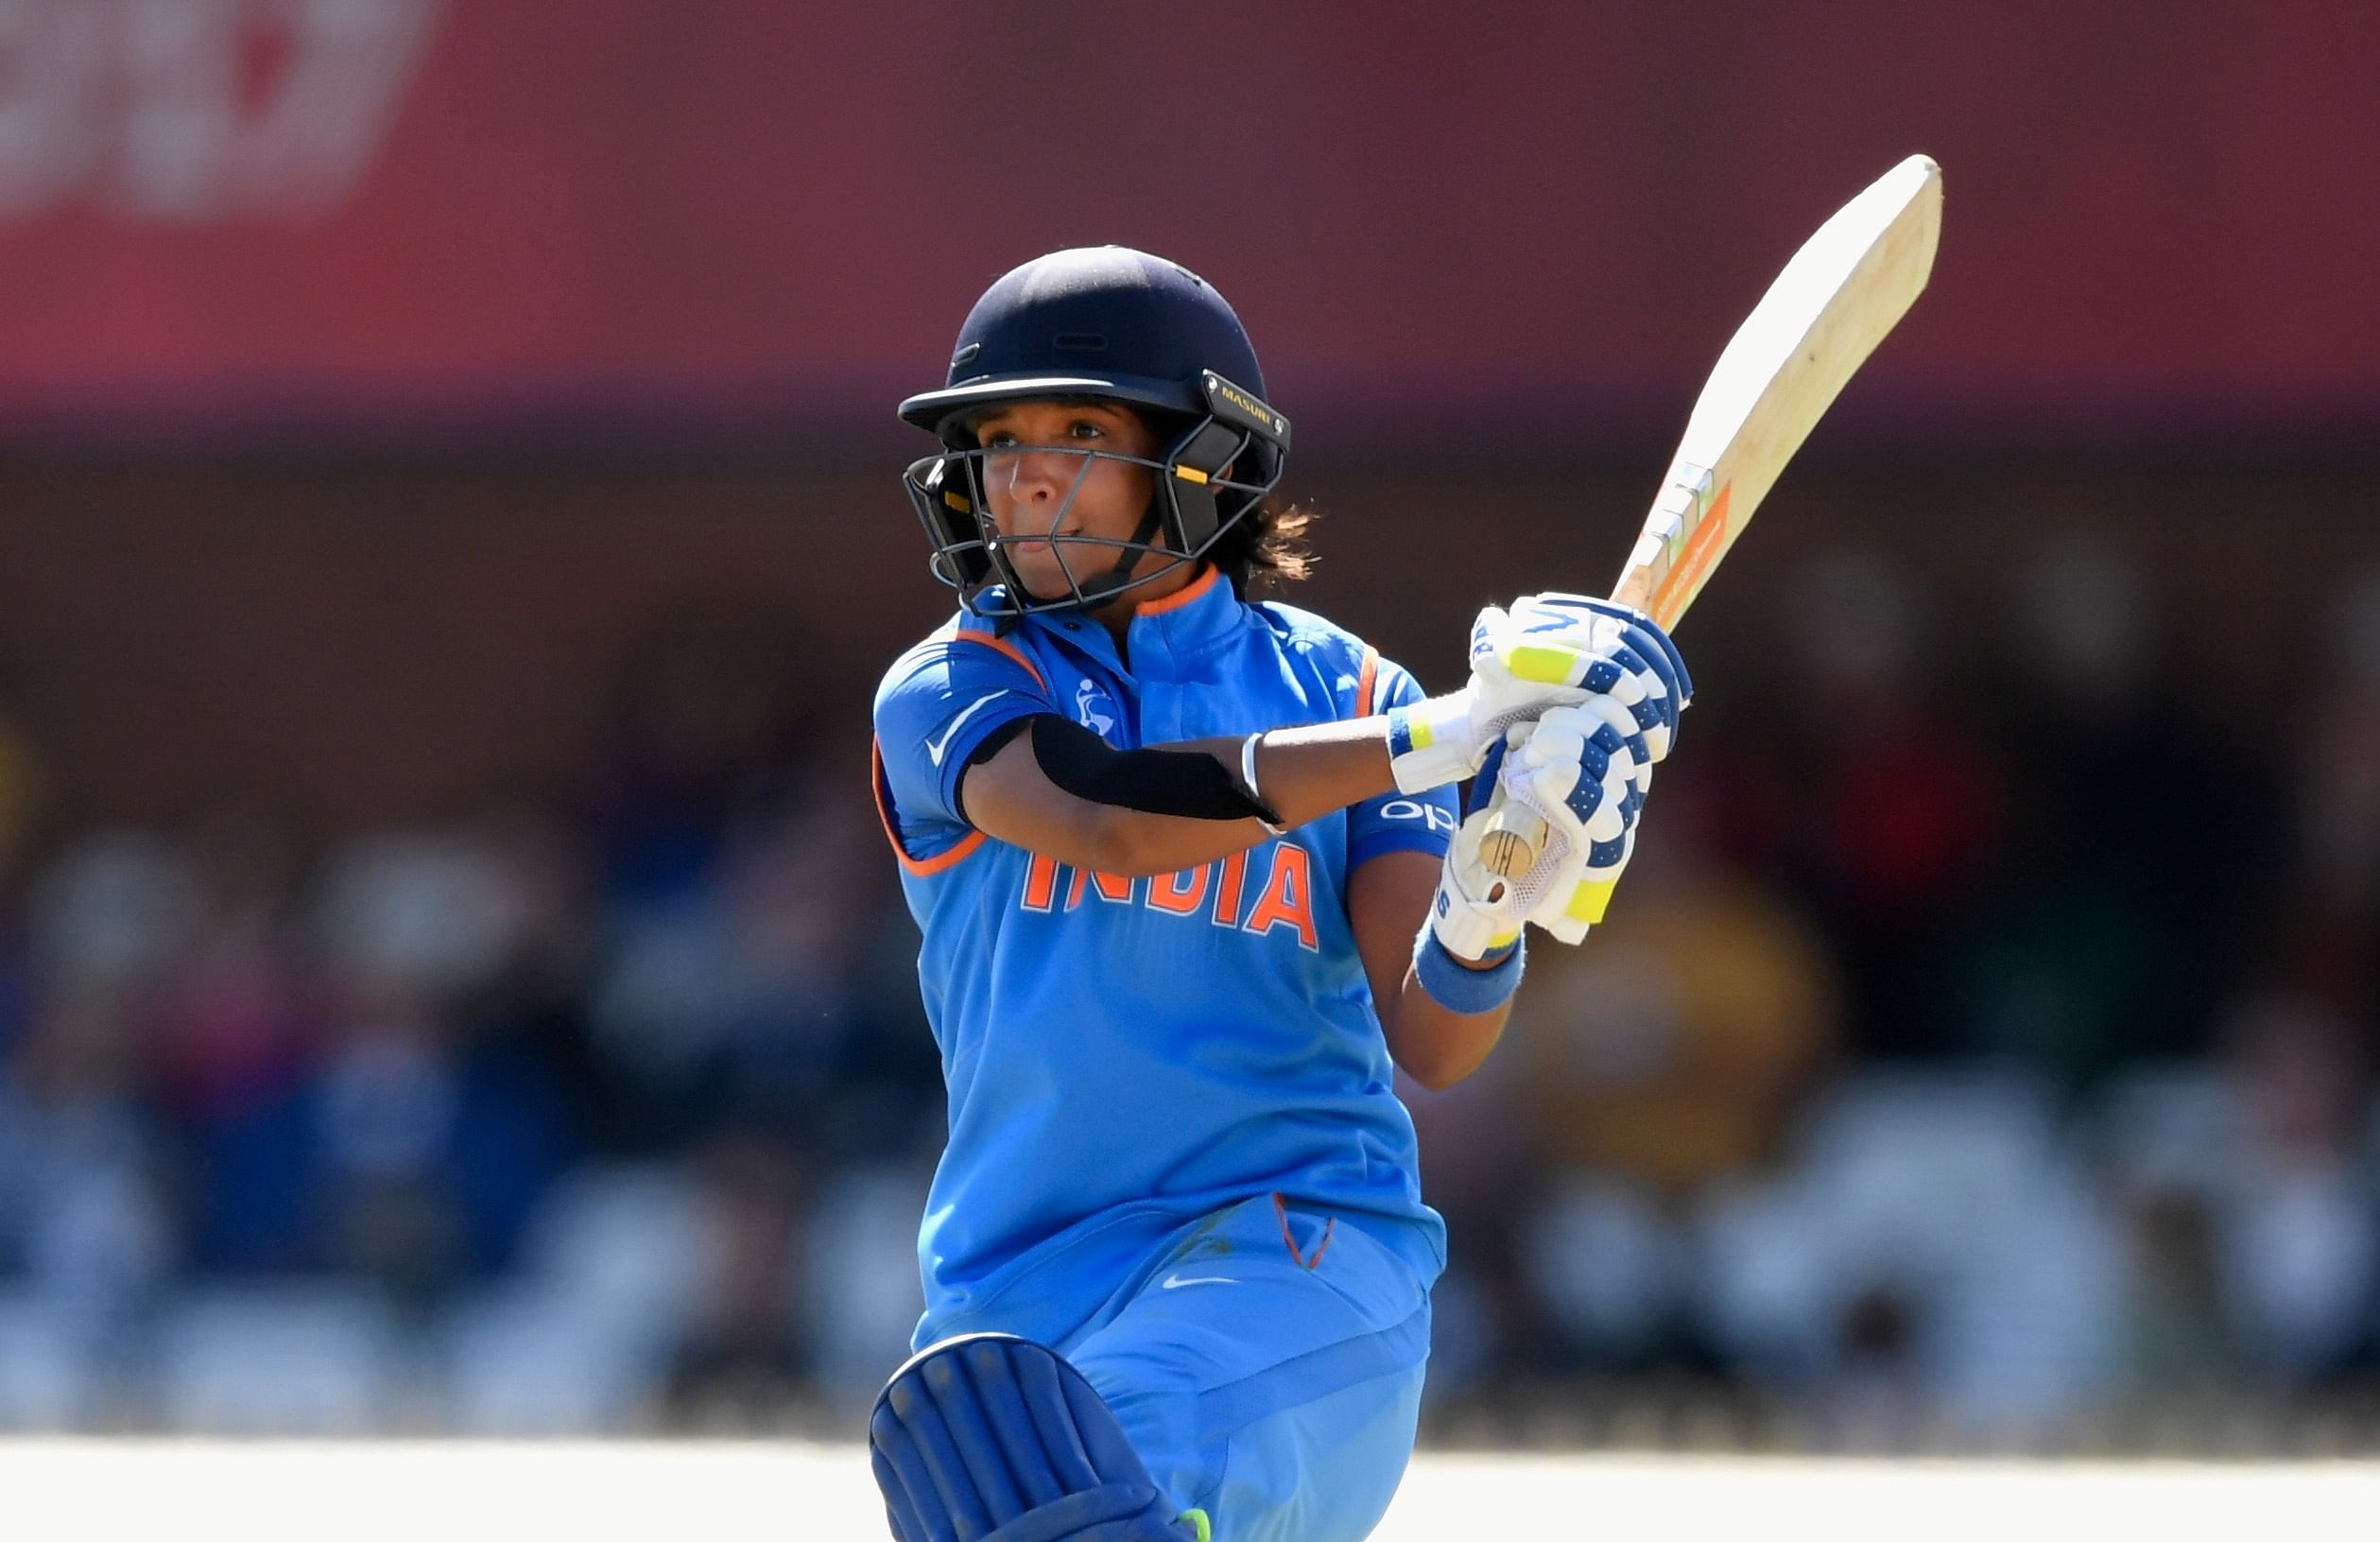 ICC Women's World Cup 2017 हरमनप्रीत कौर ने खेली 171 रनों की बेहतरीन